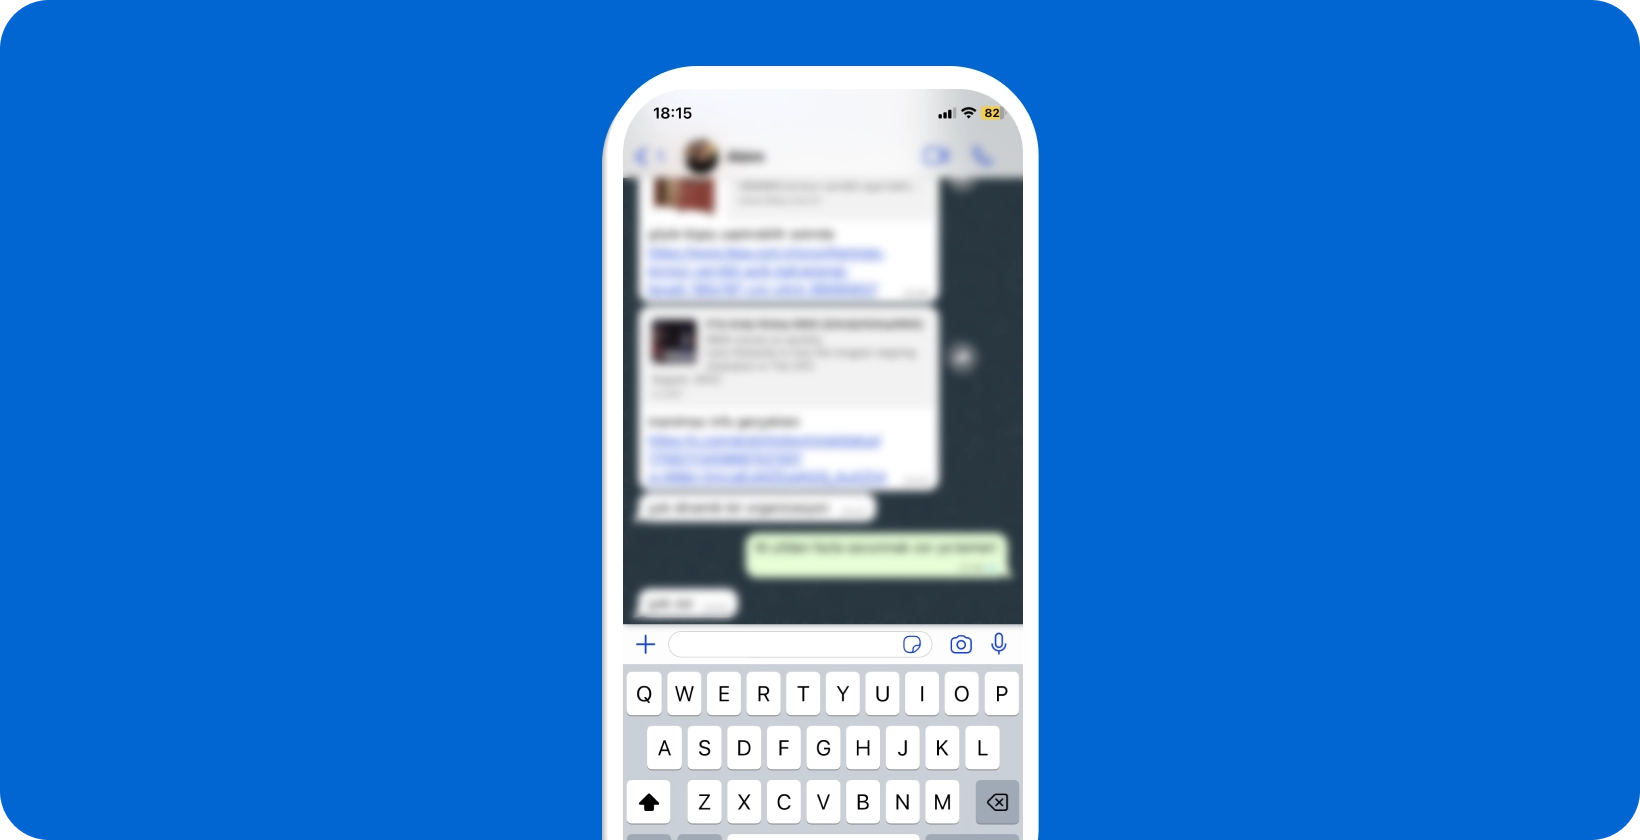 Smartfón zobrazujúci aktívnu WhatsApp konverzáciu s otvorenou klávesnicou, pripravený na hlasové diktovanie.